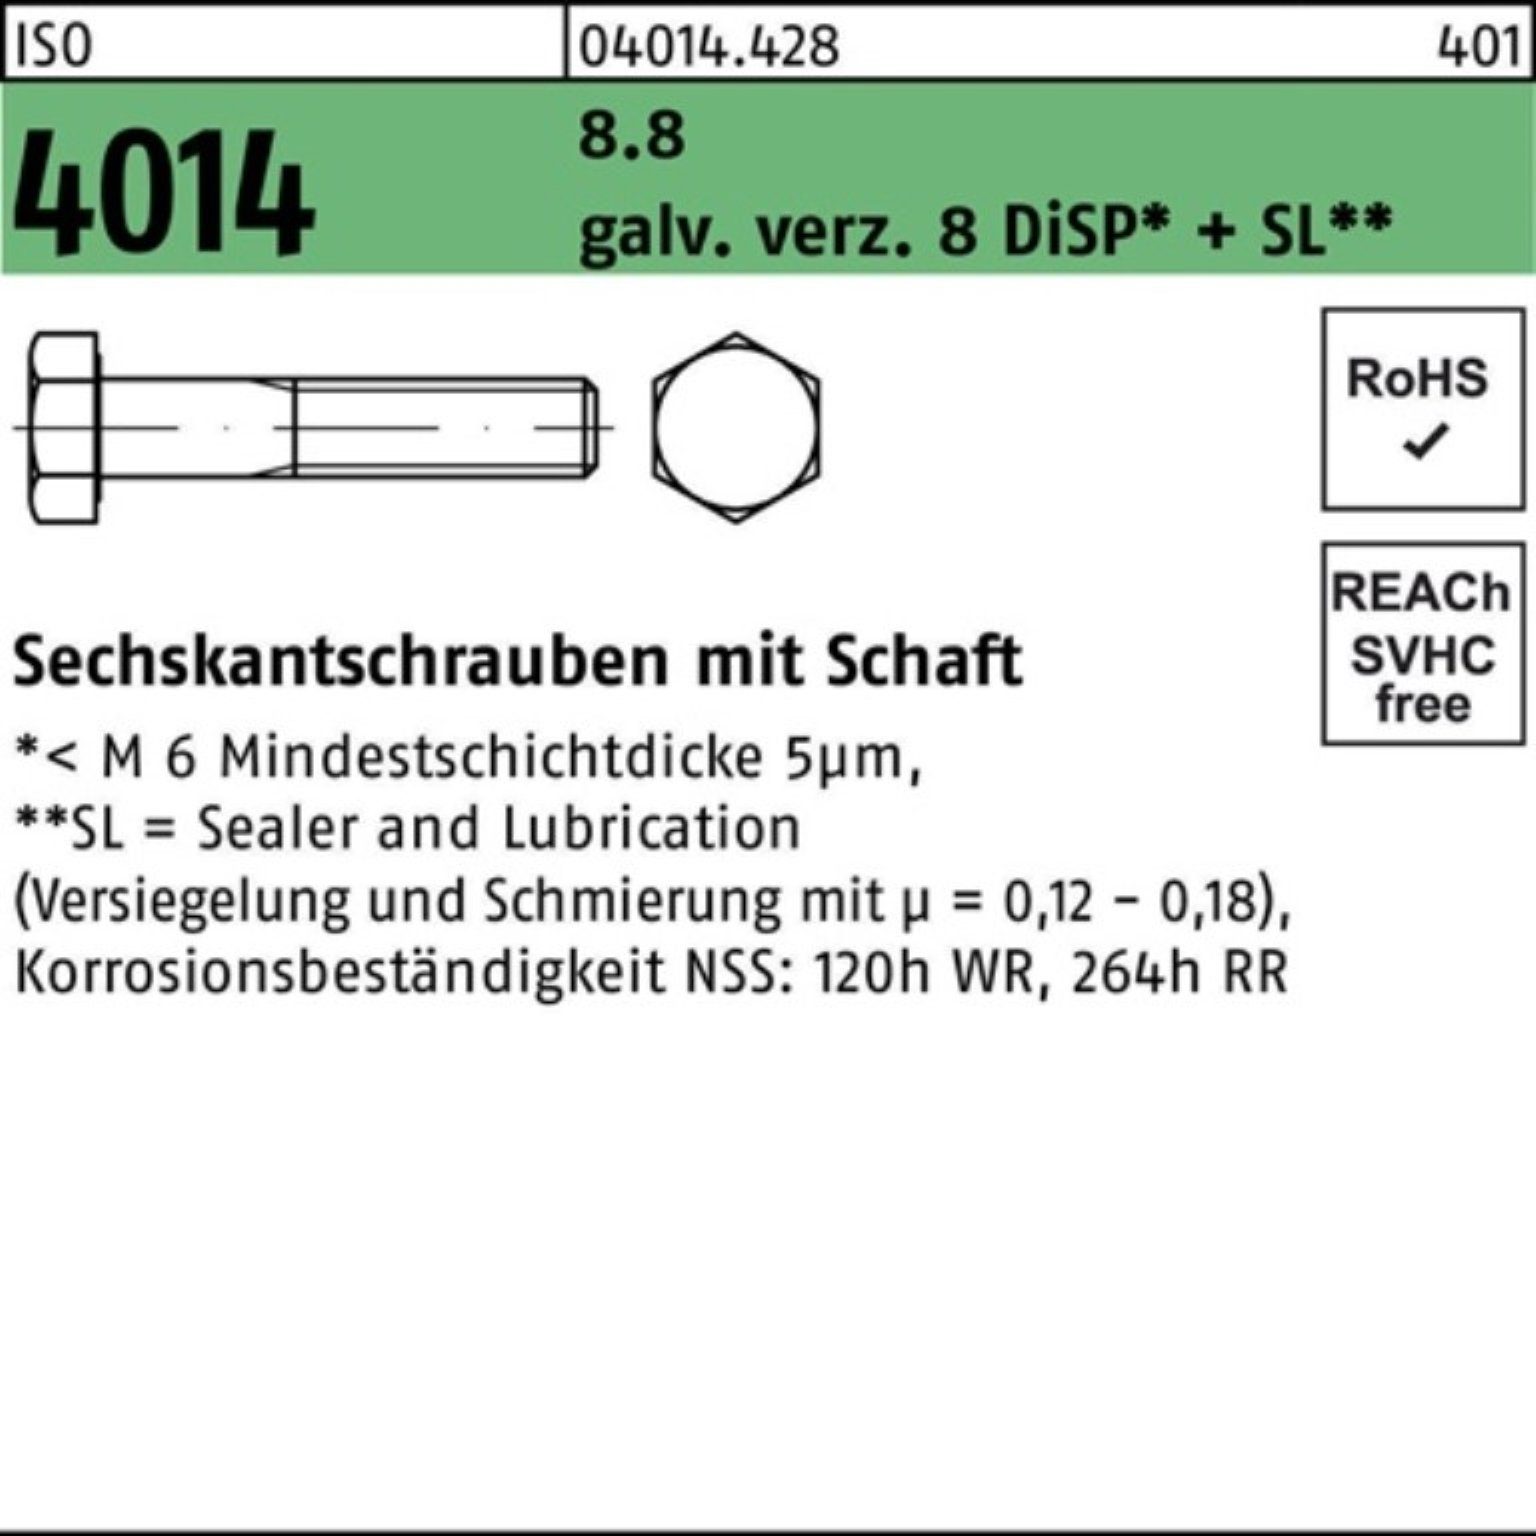 Bufab Sechskantschraube 100er Pack Sechskantschraube ISO 4014 Schaft M12x130 8.8 galv.verz. 8